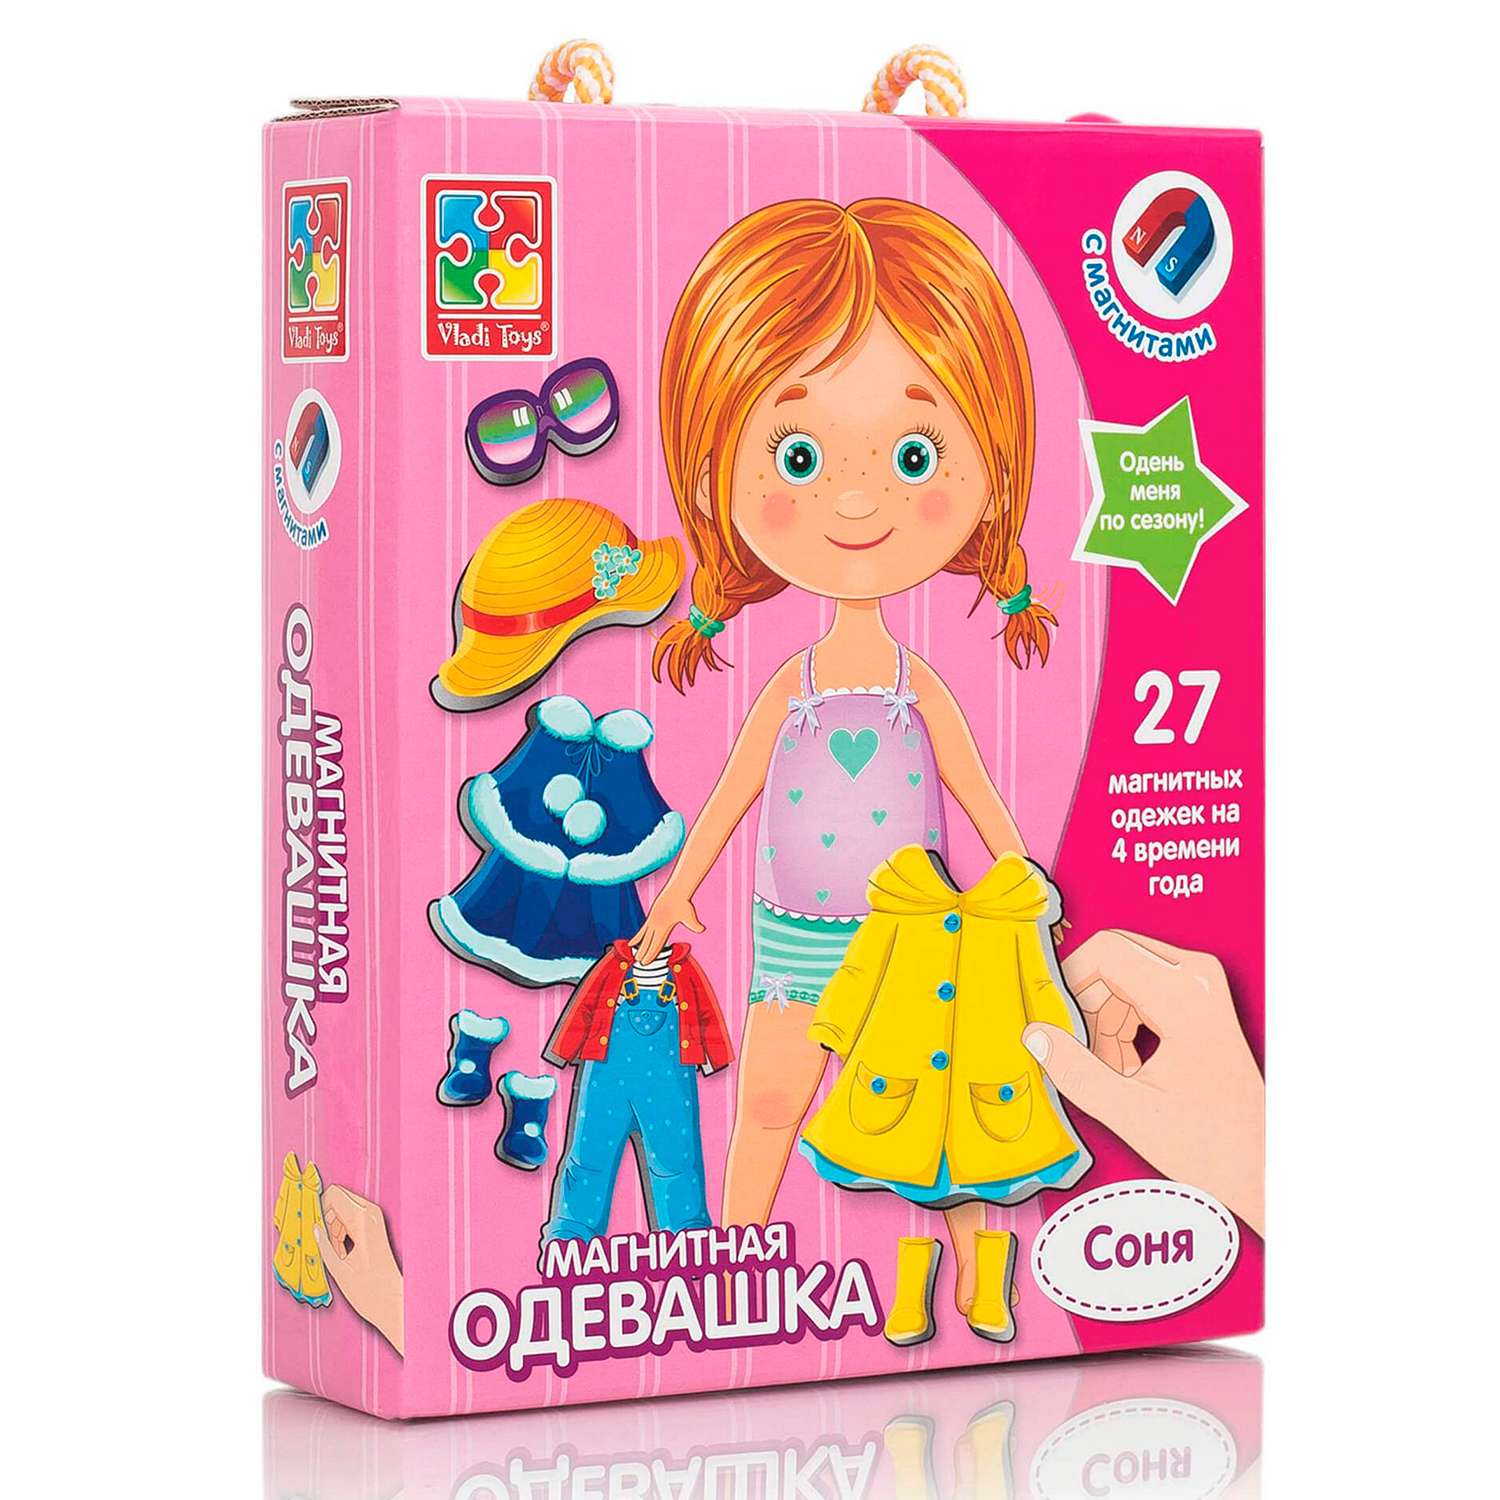 Настольная игра Vladi Toys магнитная кукла одевашка Соня - фото 1